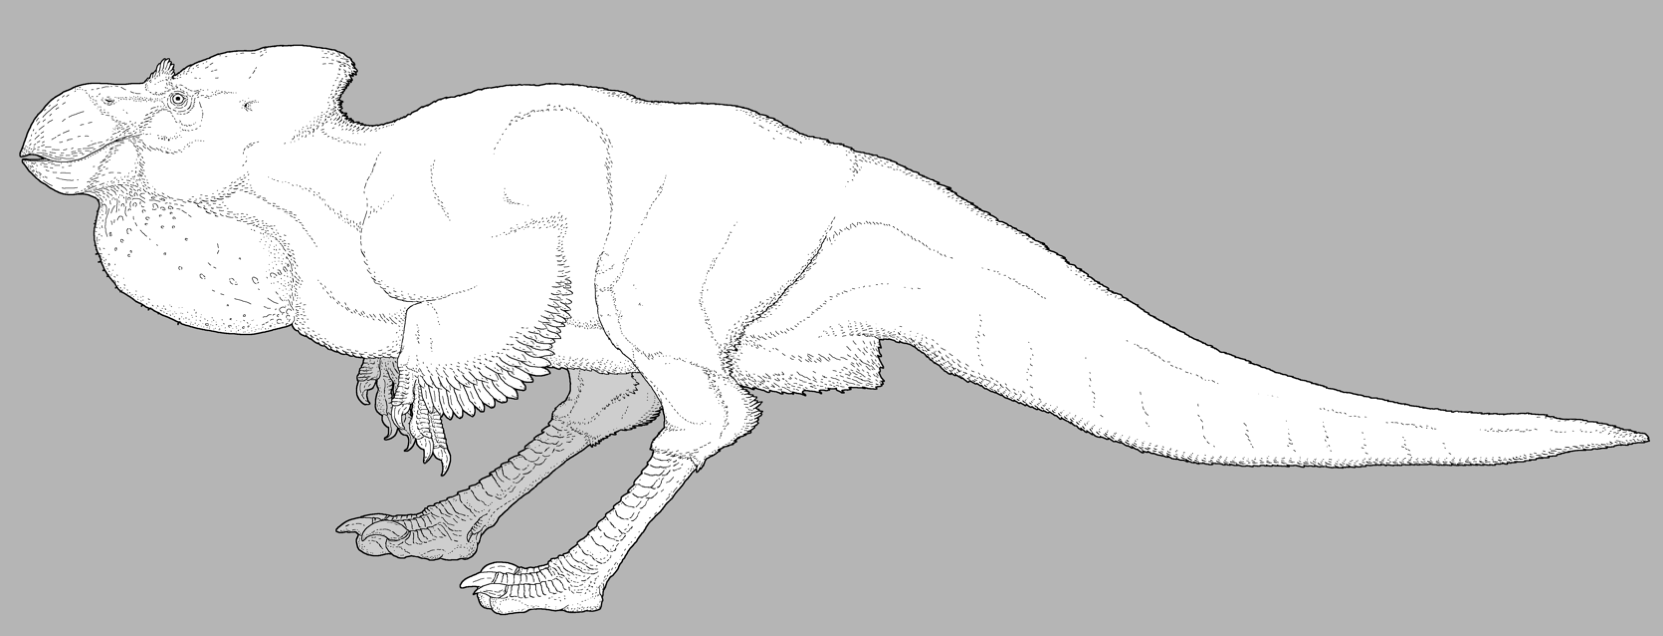 Robust Dinosauroid